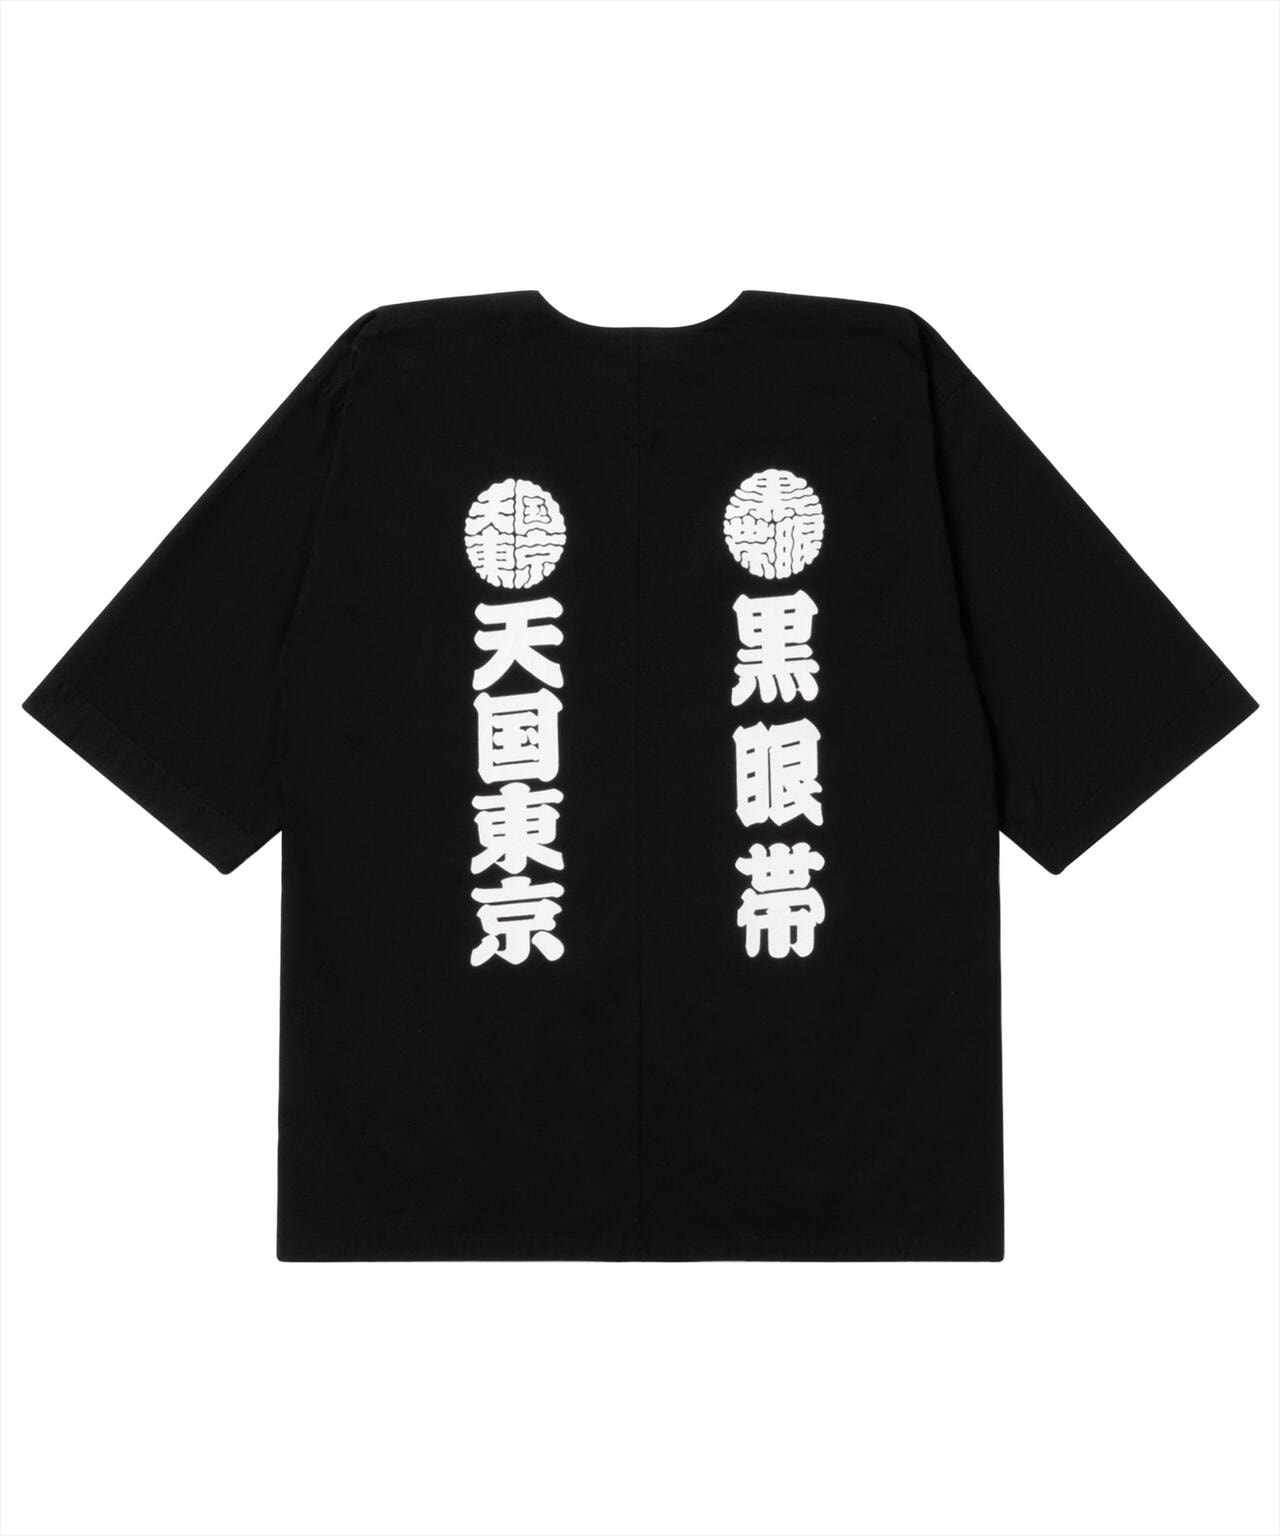 【新品未使用】ワコマリア × ブラックアイパッチ ダボシャツ Lサイズ62cm